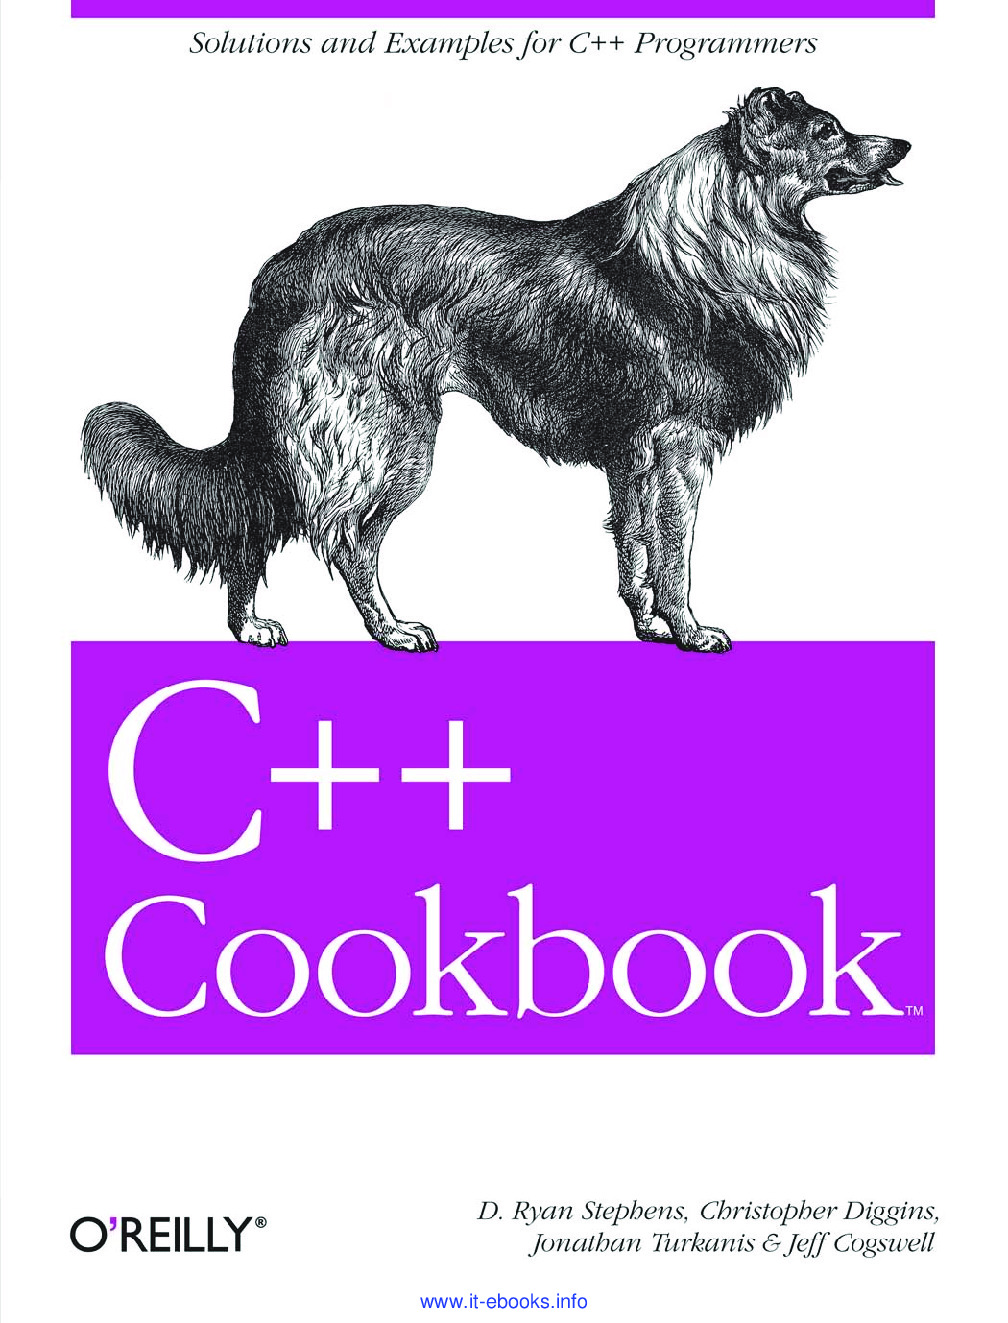 C++-Cookbook